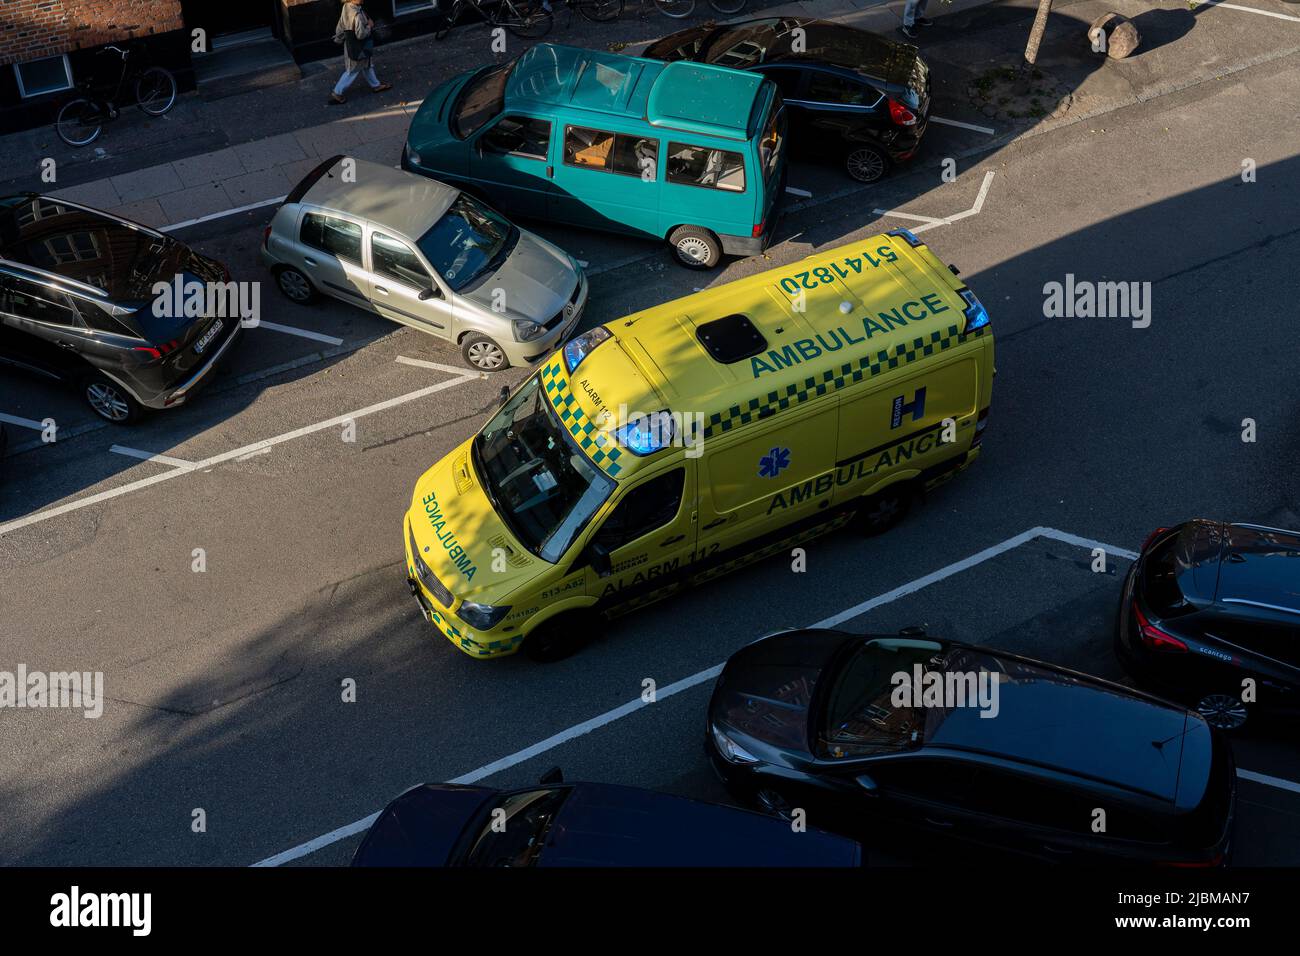 Vue en grand angle d'une ambulance à Copenhague Banque D'Images